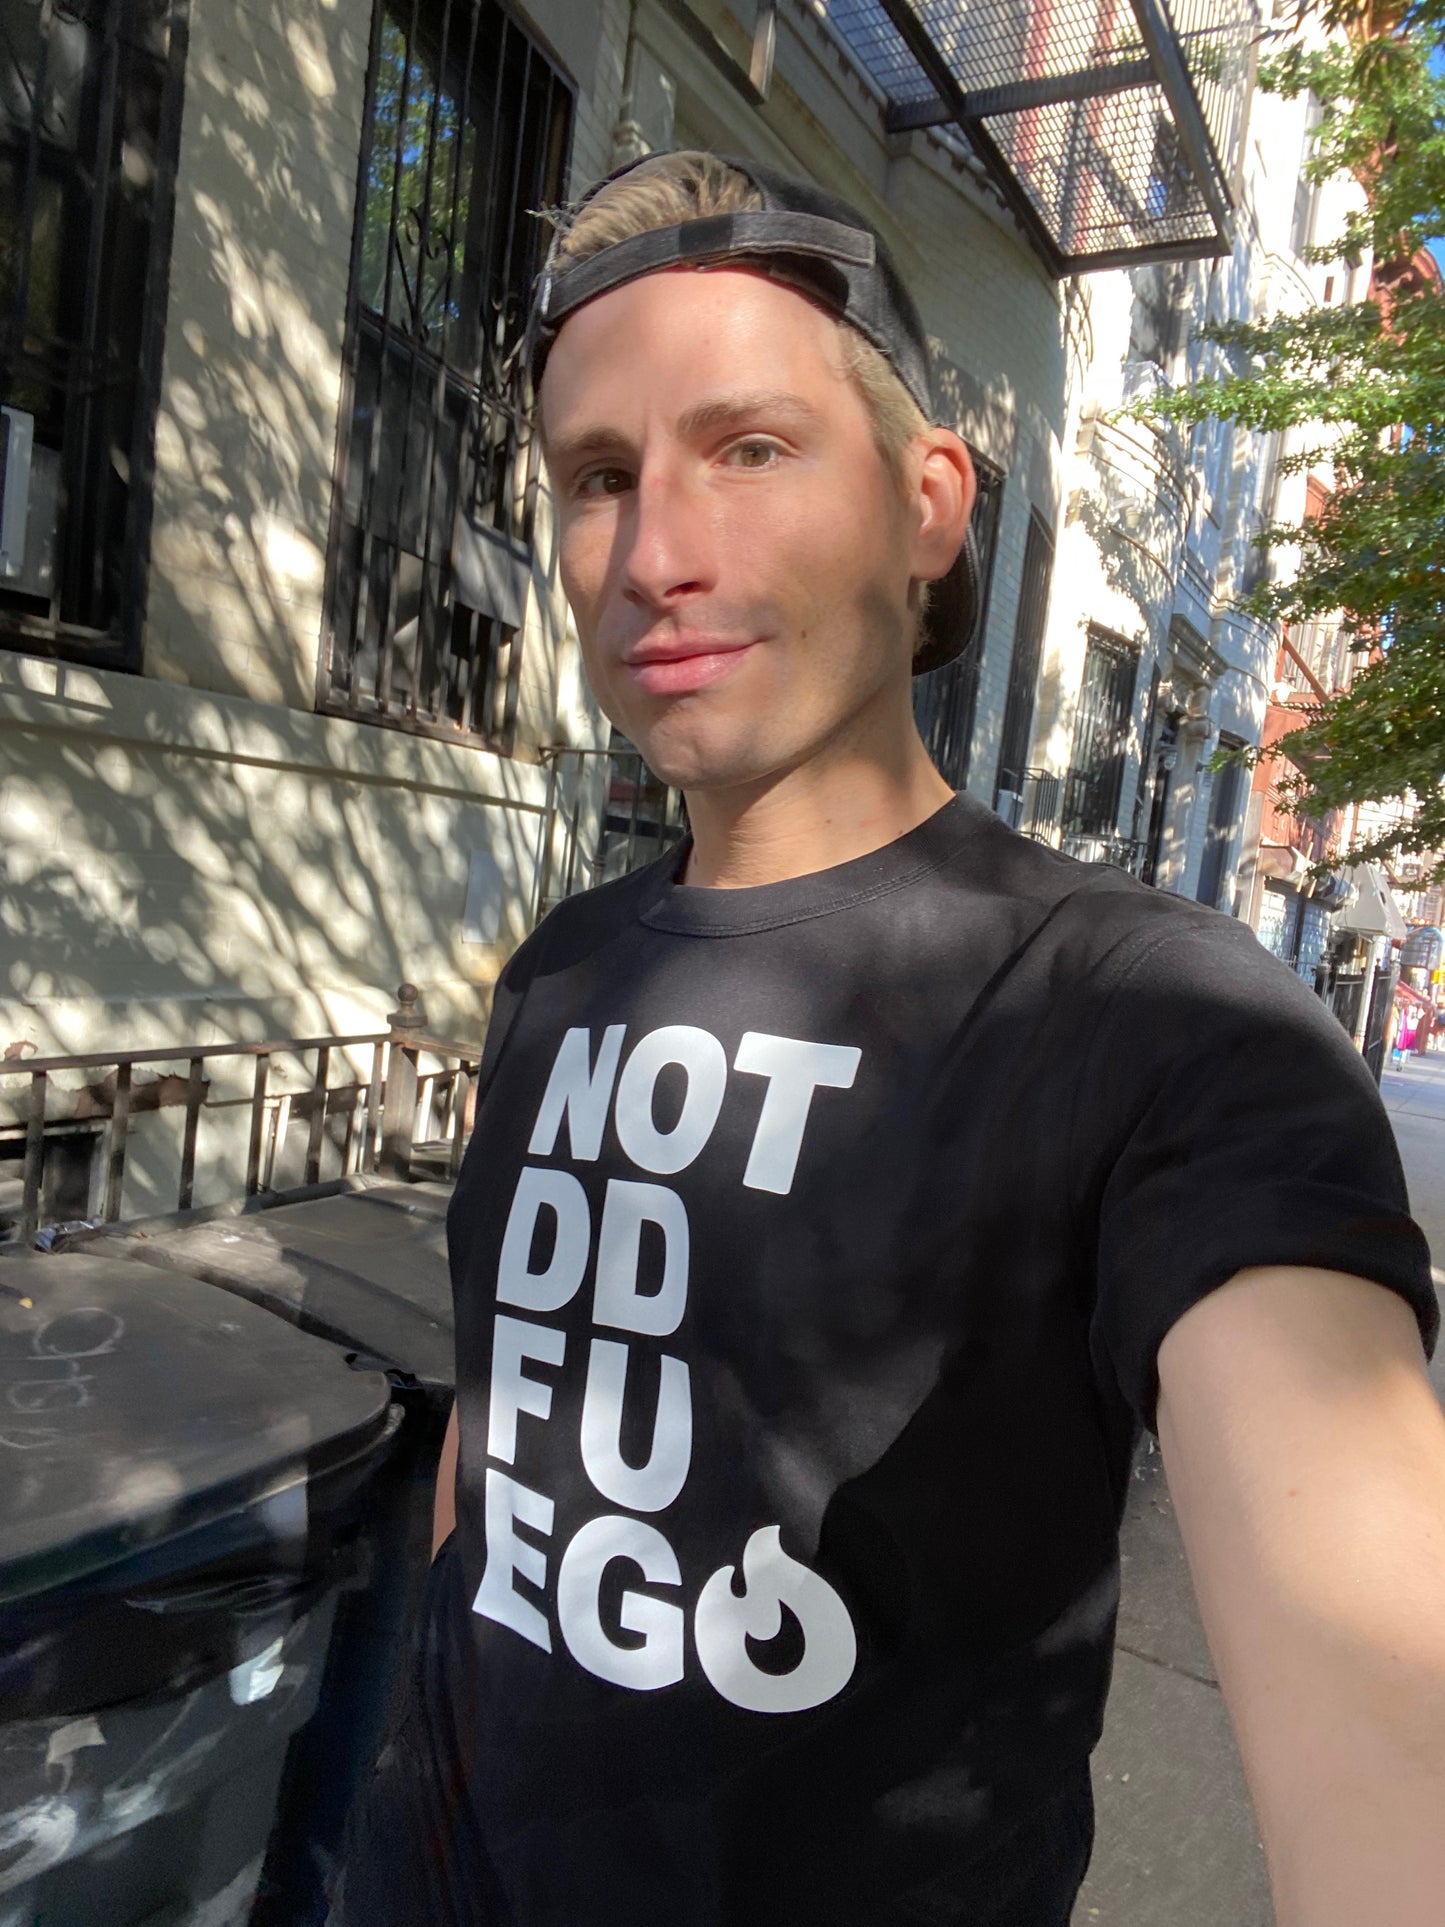 NOT DD FUEGO T-Shirt